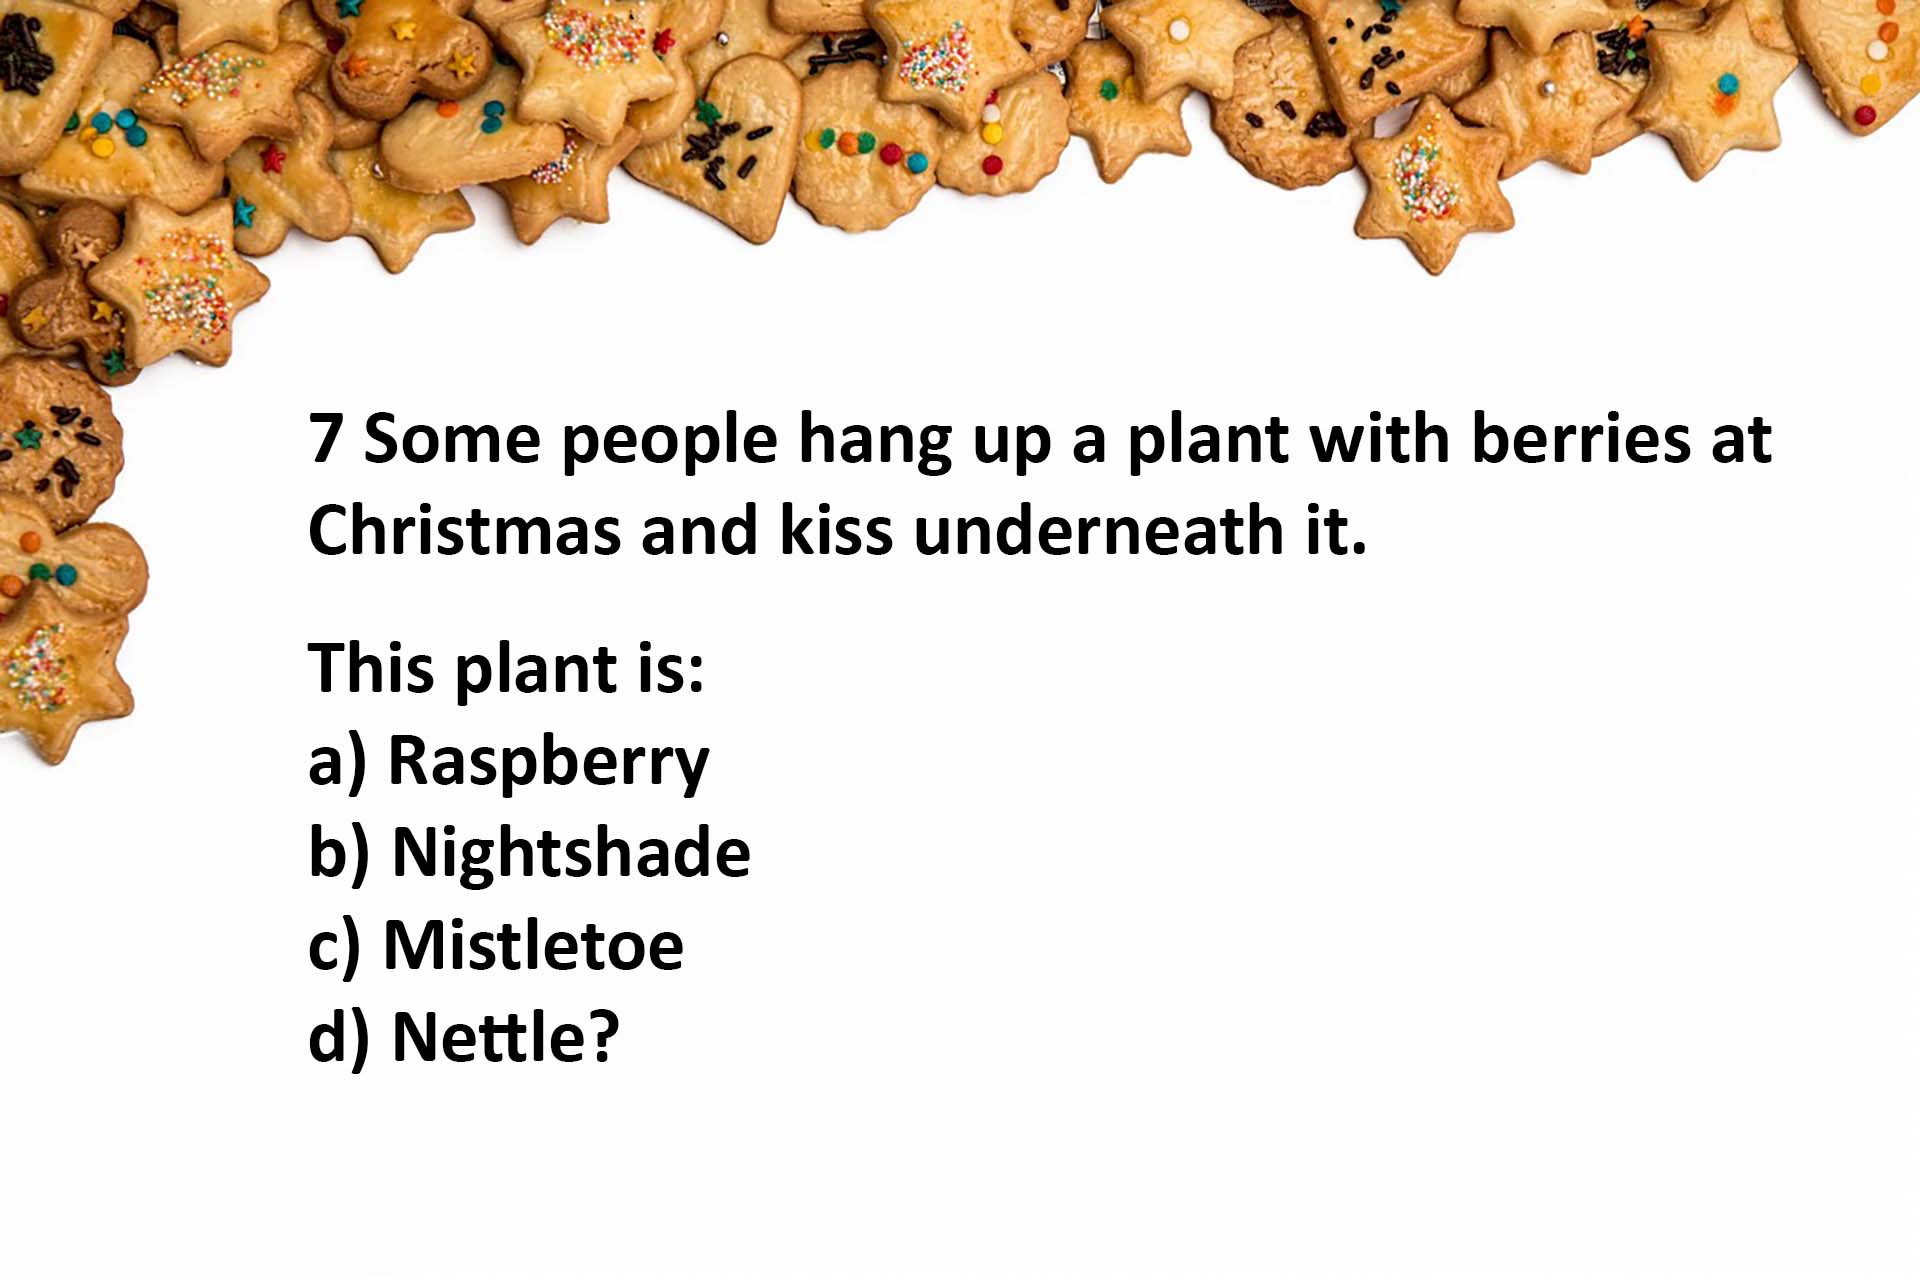 question 7 mistletoe